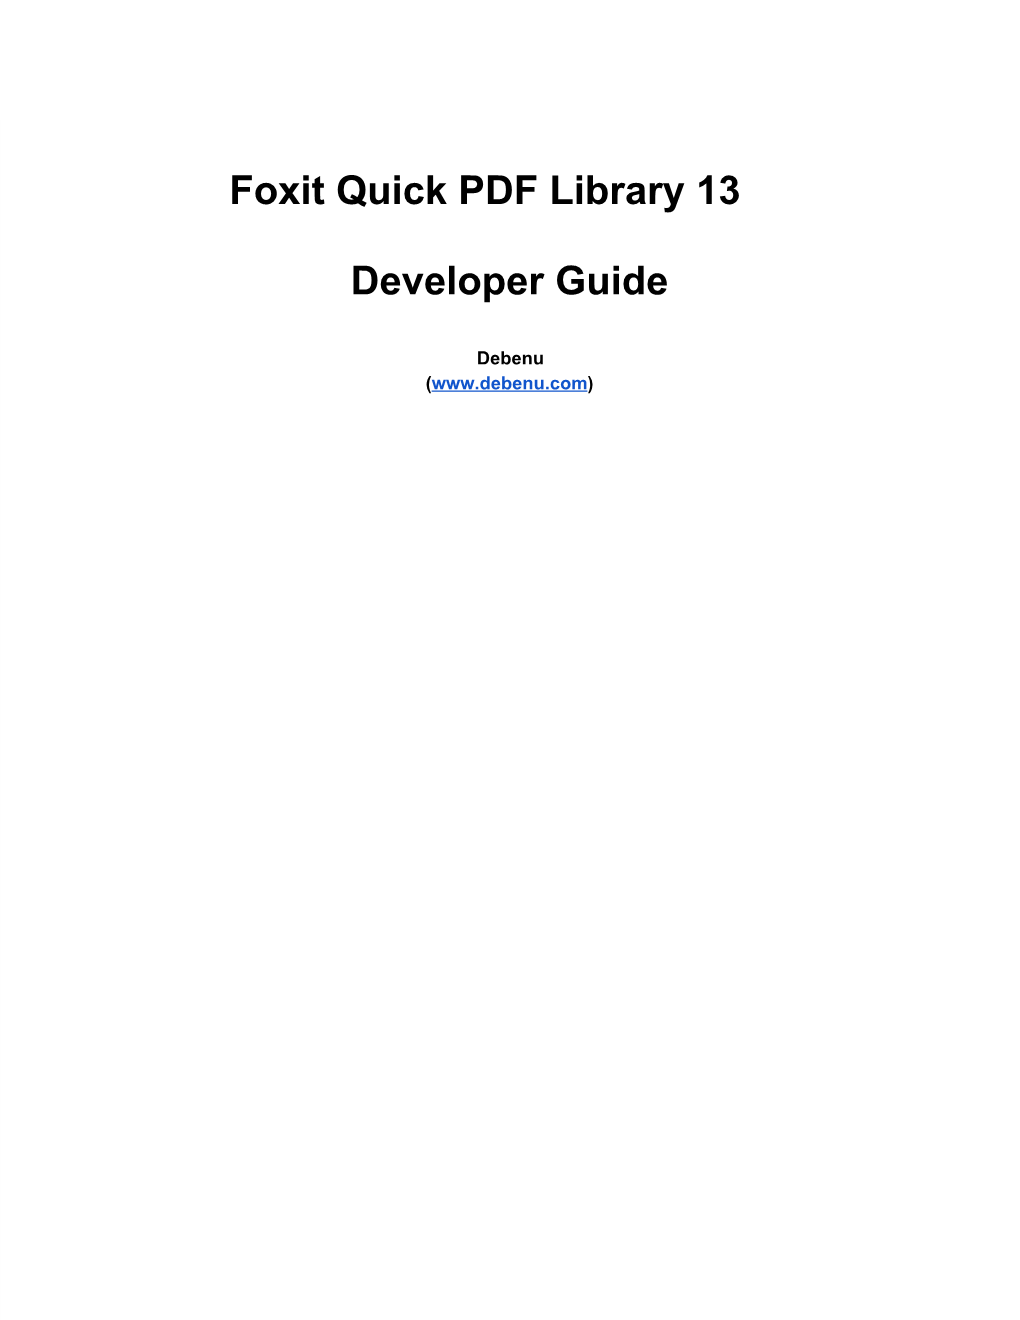 Debenu Quick PDF Library 12 Developer Guide